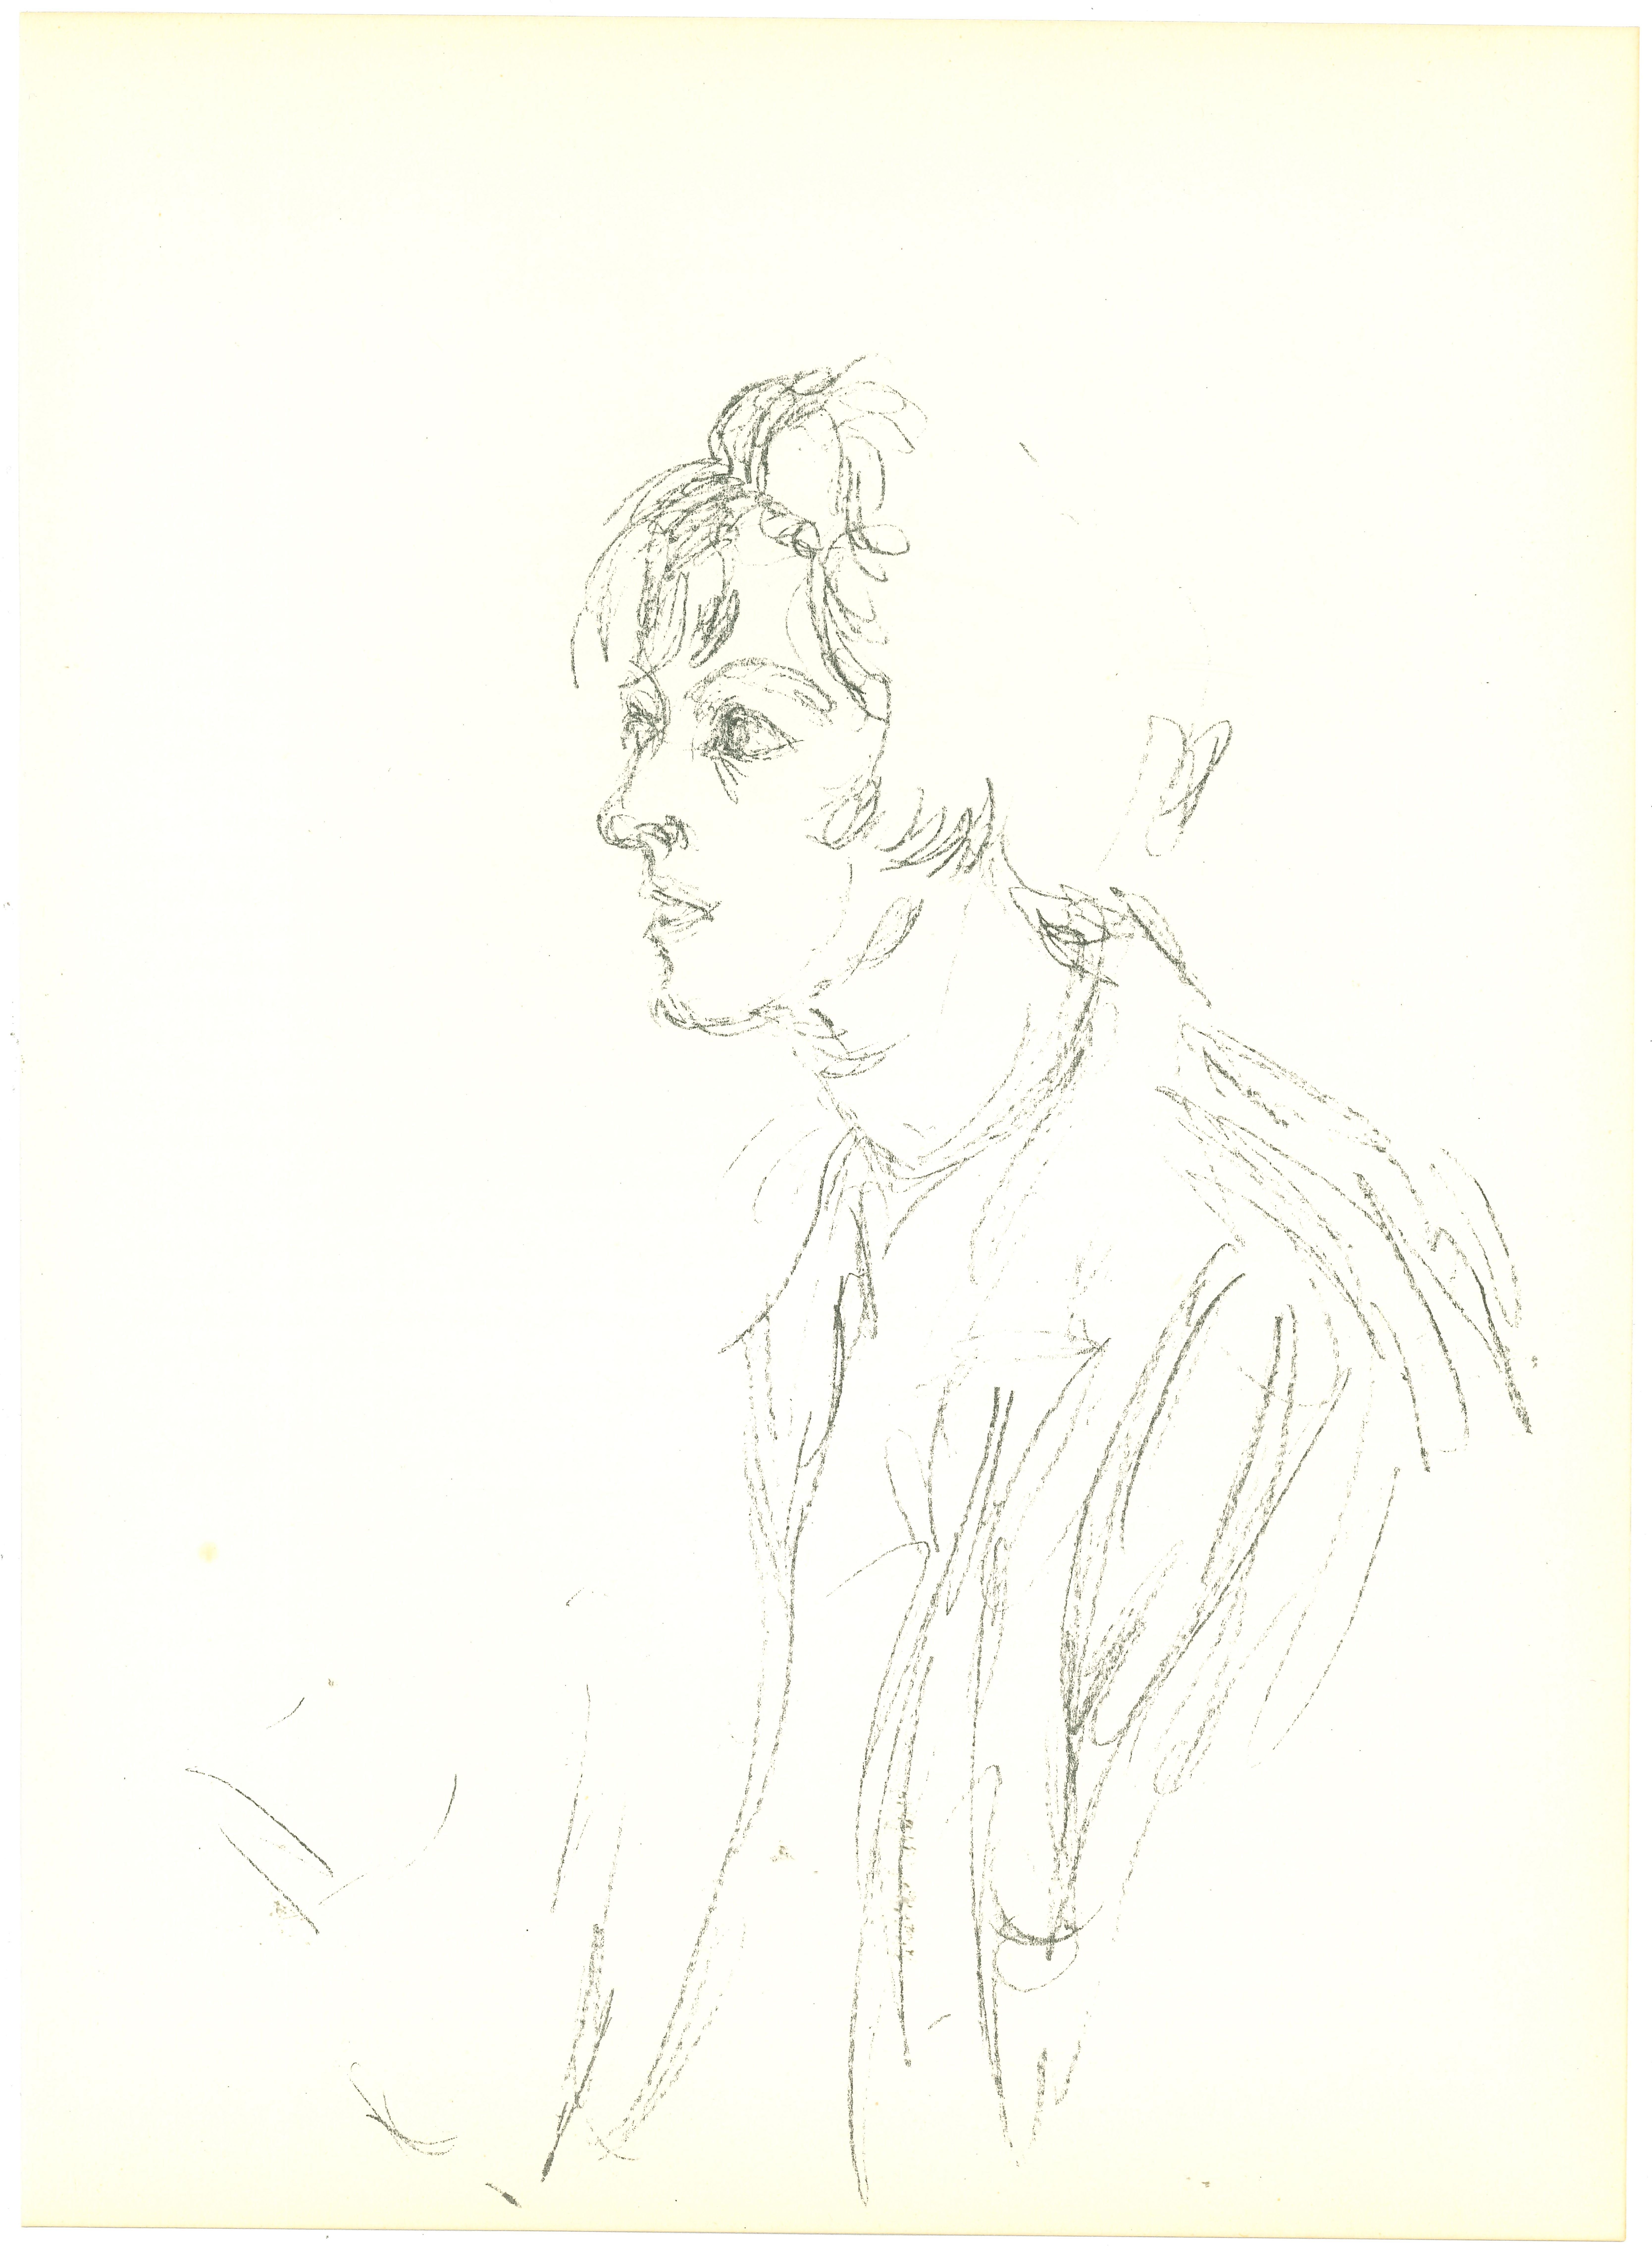 Porträt aus Derriere Le Miroir  ist eine Lithographie nach einer Zeichnung von Alberto Giacometti aus dem Jahr 1964.

Das Werk wurde vom Art Magazine veröffentlicht  Derriere Le Miroir, in einer Giacometti gewidmeten Nummer.  Gedruckt bei Ateliers